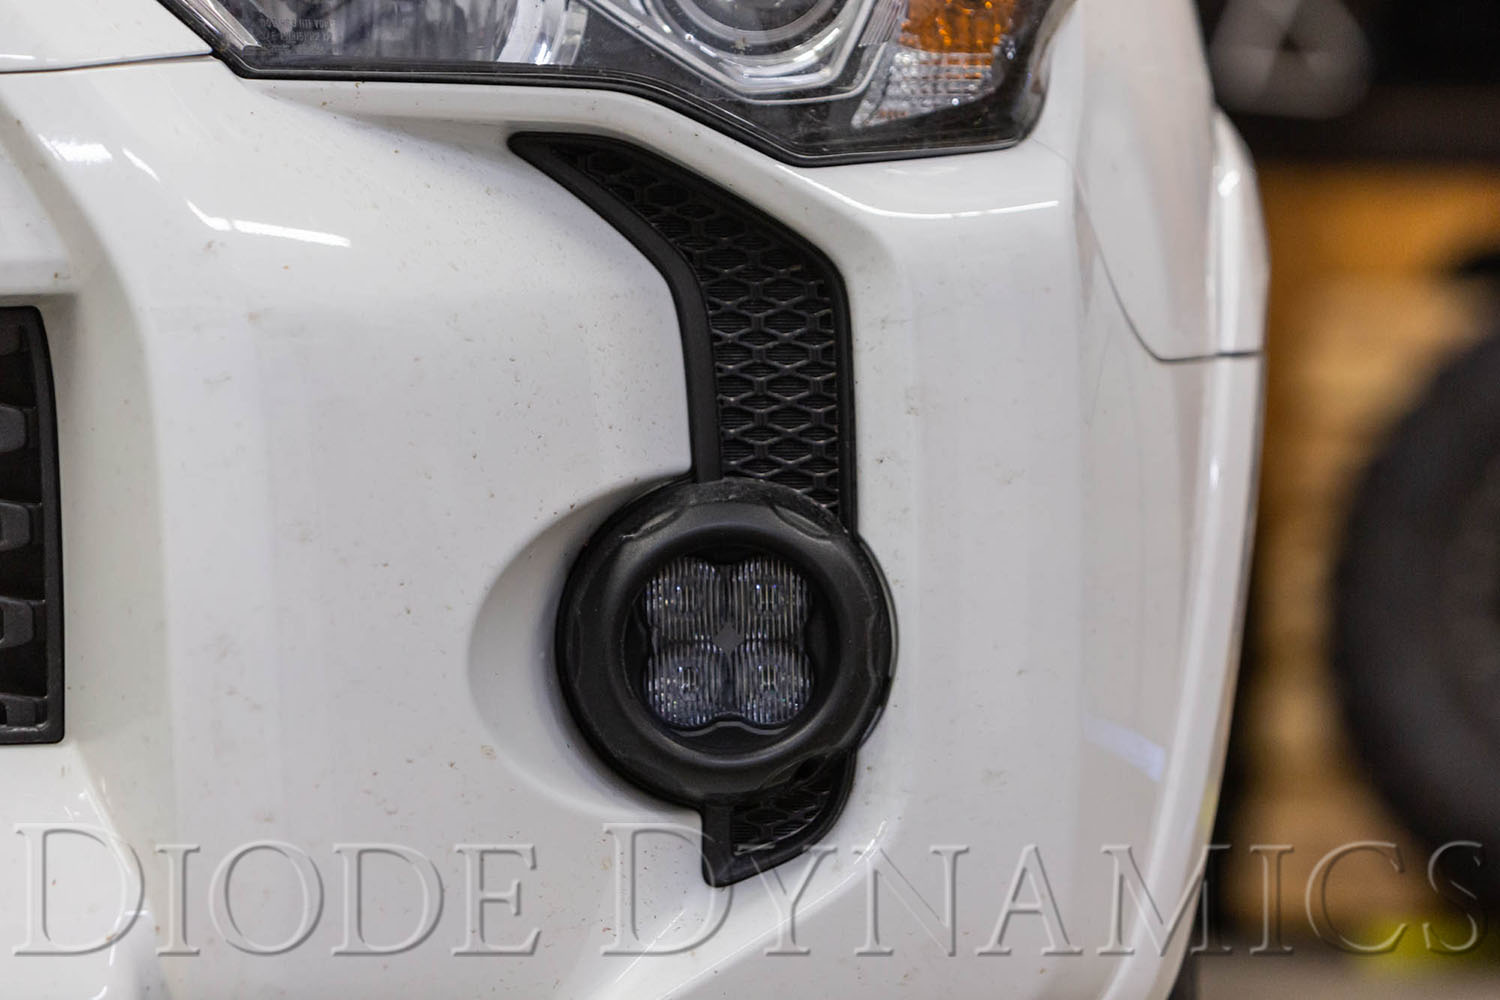 Diode Dynamics SS3 LED Fog Light Kit for 2010-2019 Toyota 4Runner